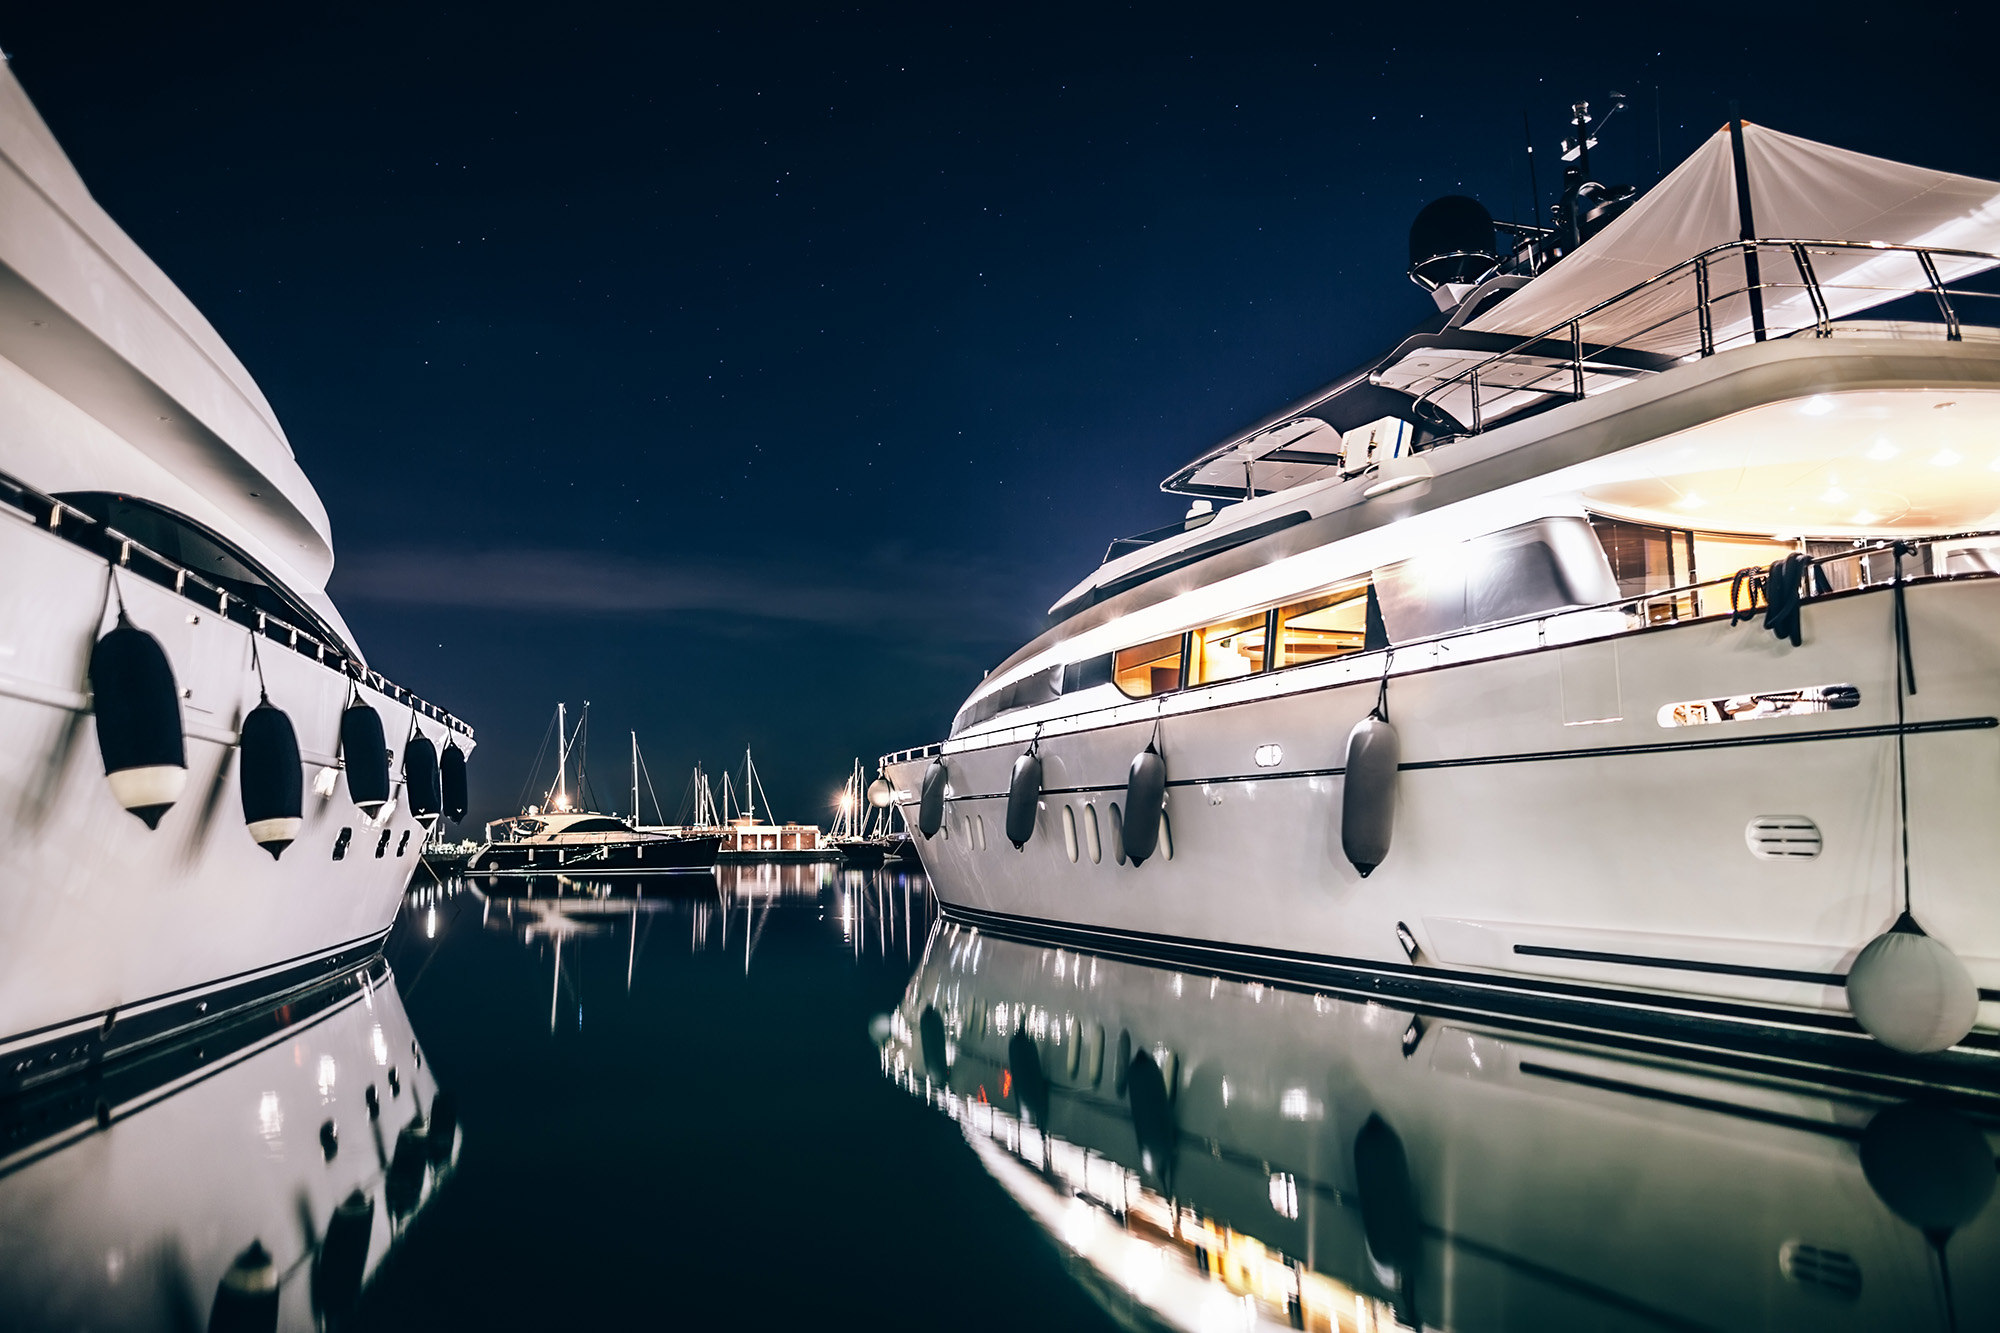 RF Luxury yachts rich